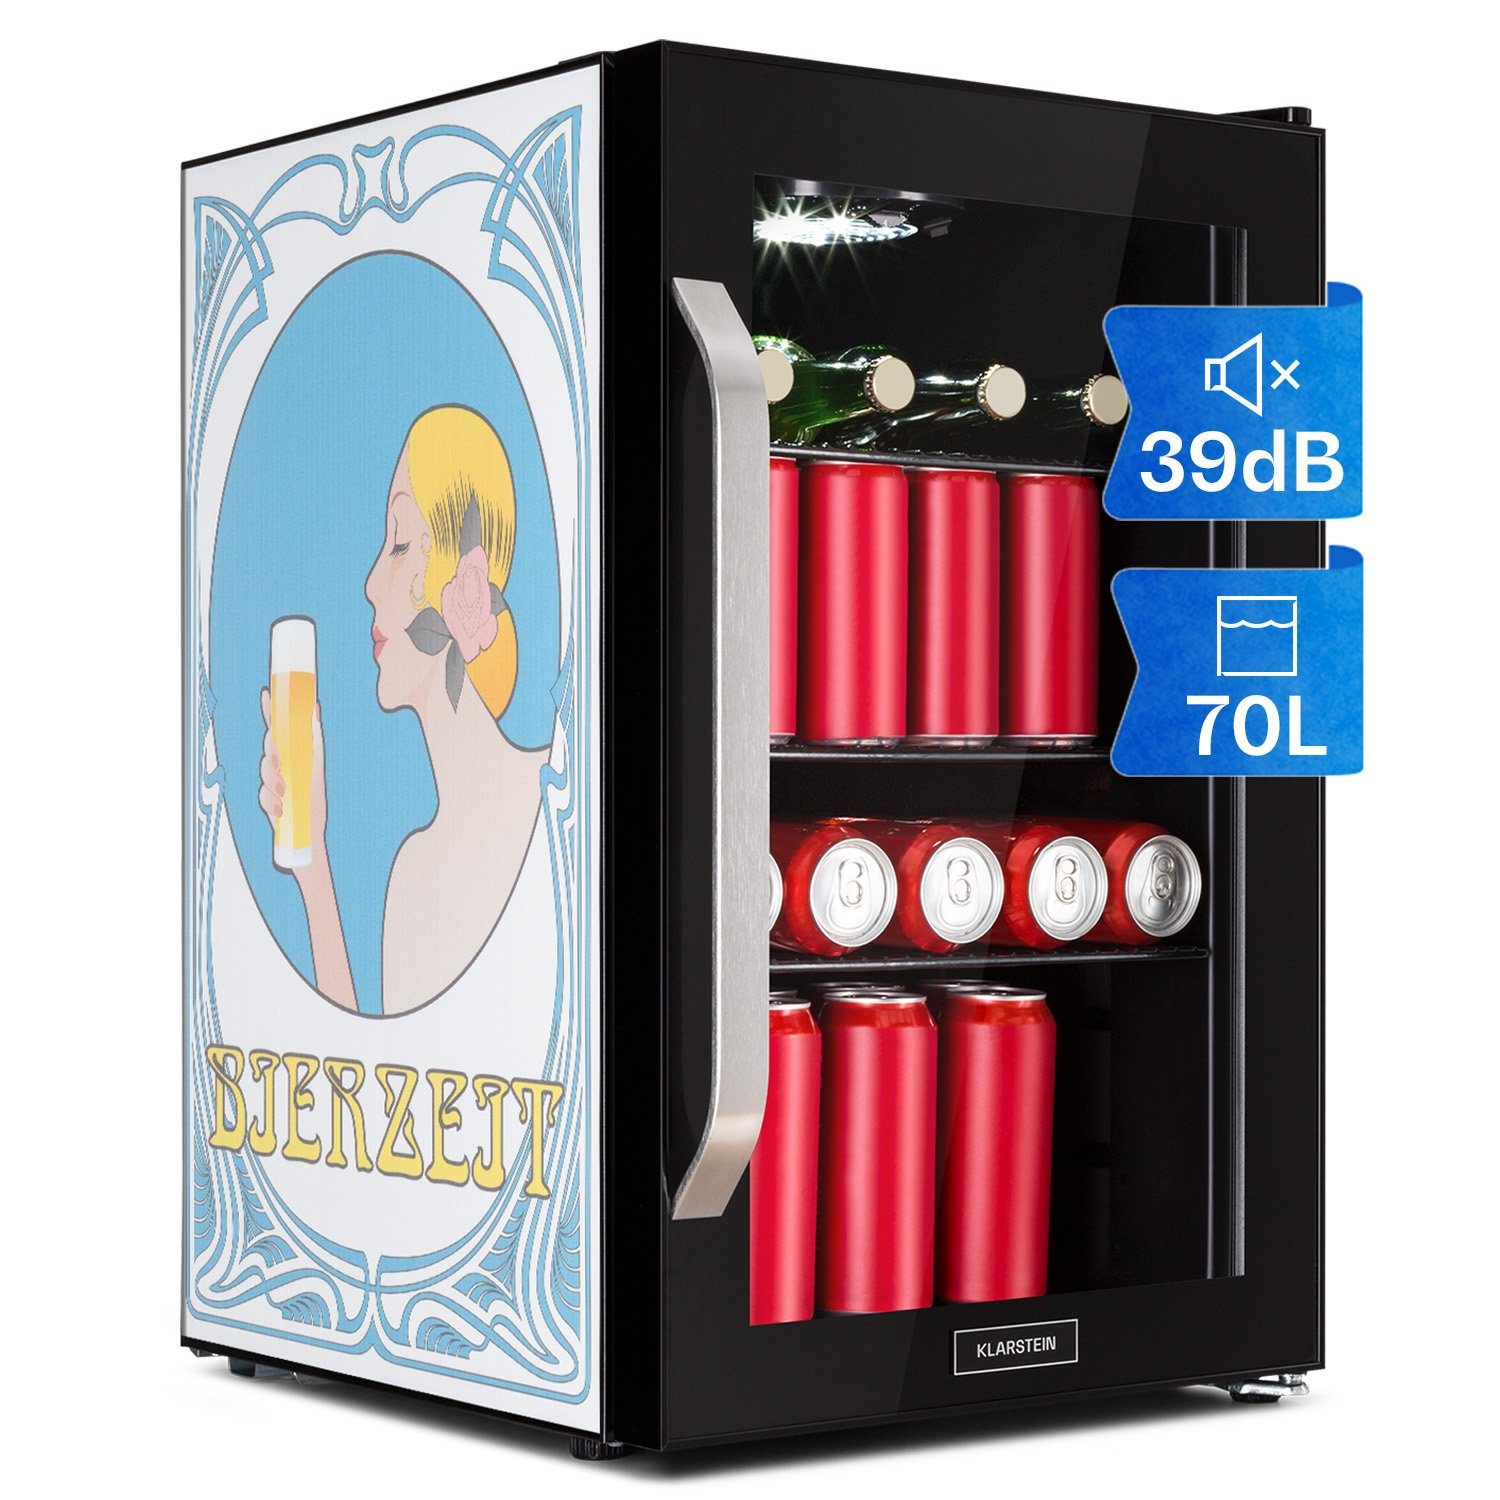 Klarstein Getränkekühlschrank HEA13-Beerzeit-OX 10041176, 67 cm hoch, 43 cm breit, Bierkühlschrank Getränkekühlschrank Flaschenkühlschrank mit Glastür Schwarz